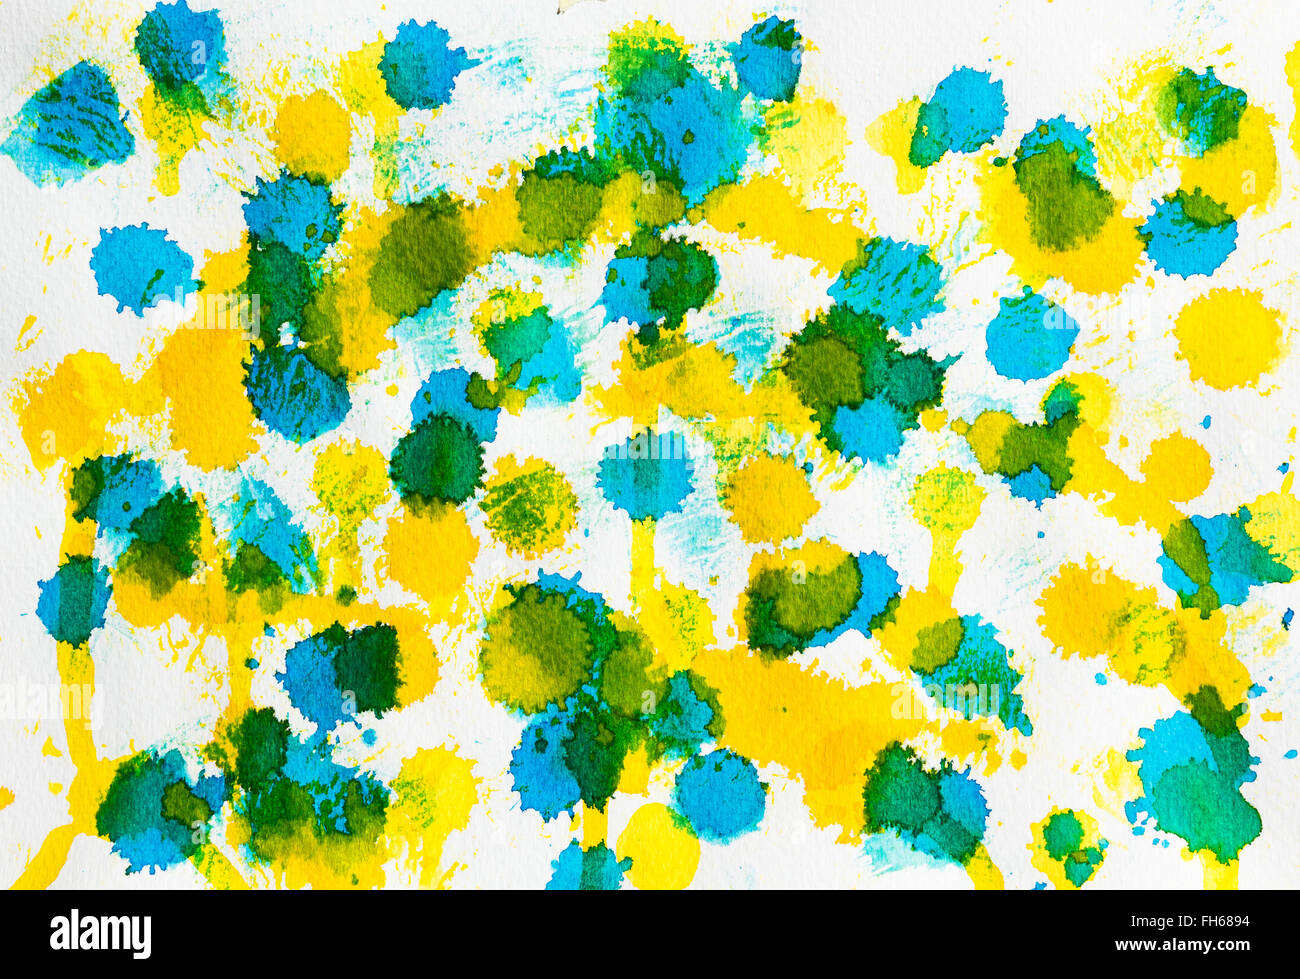 Aquarell blau gelb mix Zusammenfassung Hintergrund. Auf weissem grobkörniges Papier gemalt. Zu Verwenden wie eine Textur oder Design Element. Stockfoto